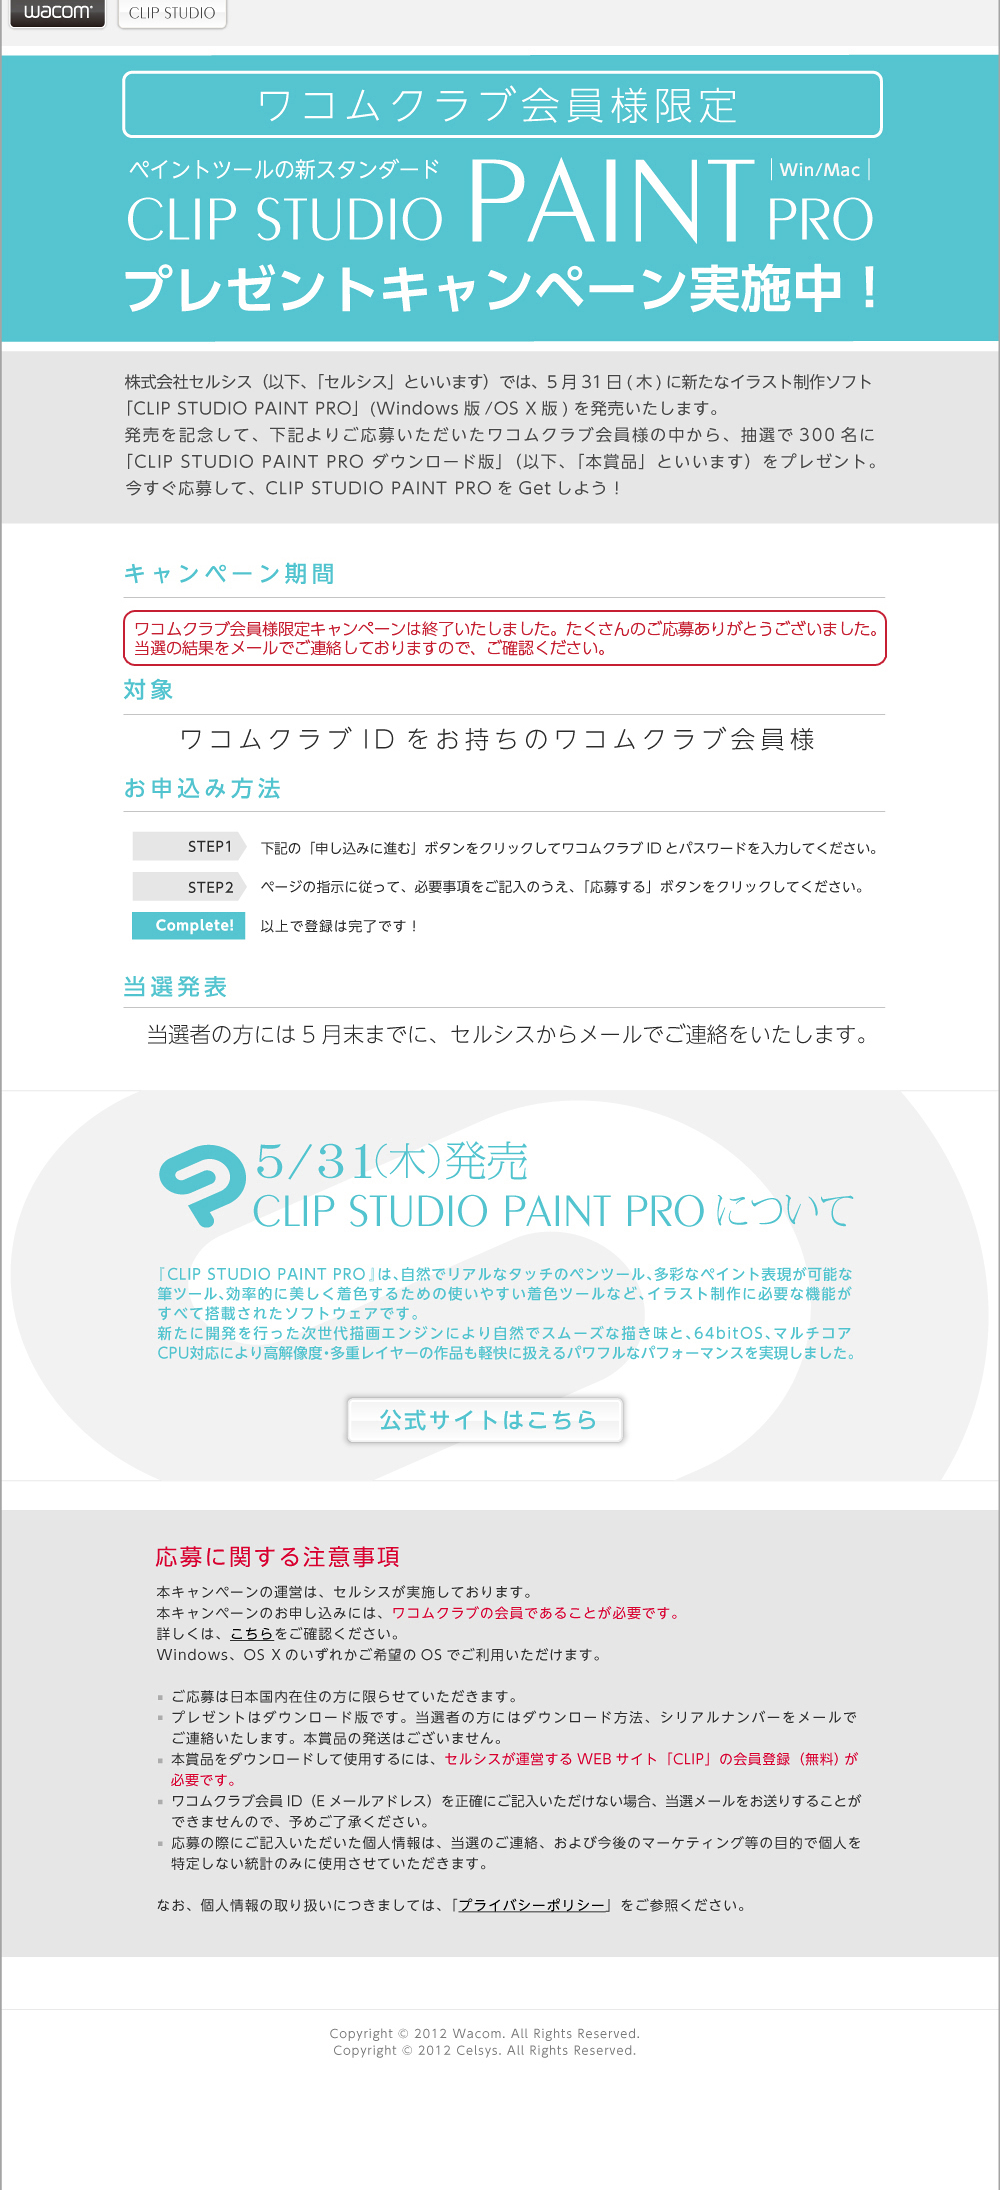 ワコムクラブ会員様限定「CLIP STUDIO PAINT PRO」プレゼントキャンペーン